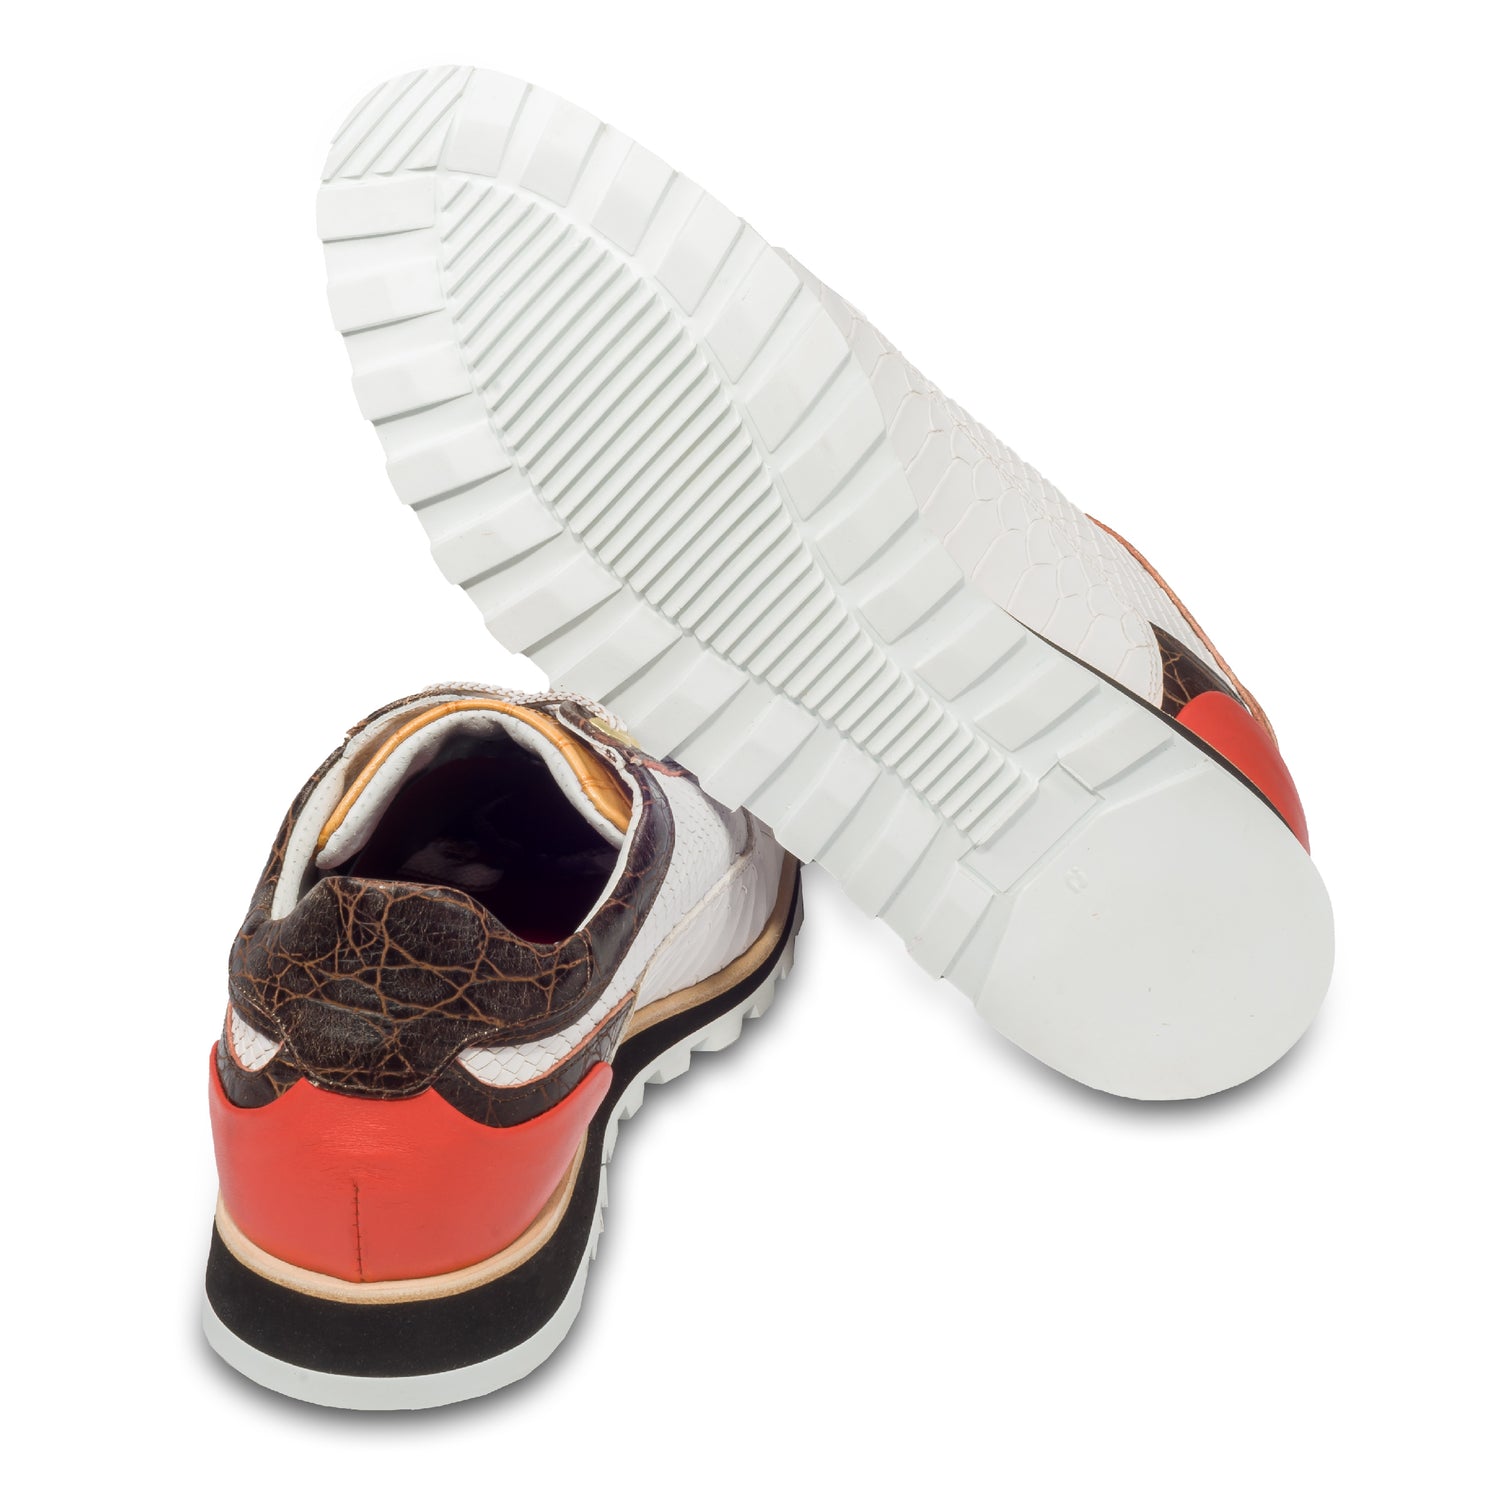 Lorenzi Herren Leder-Sneaker in braun weiß mit Prägung, Ansicht der Ferse und Sohlenunterseite